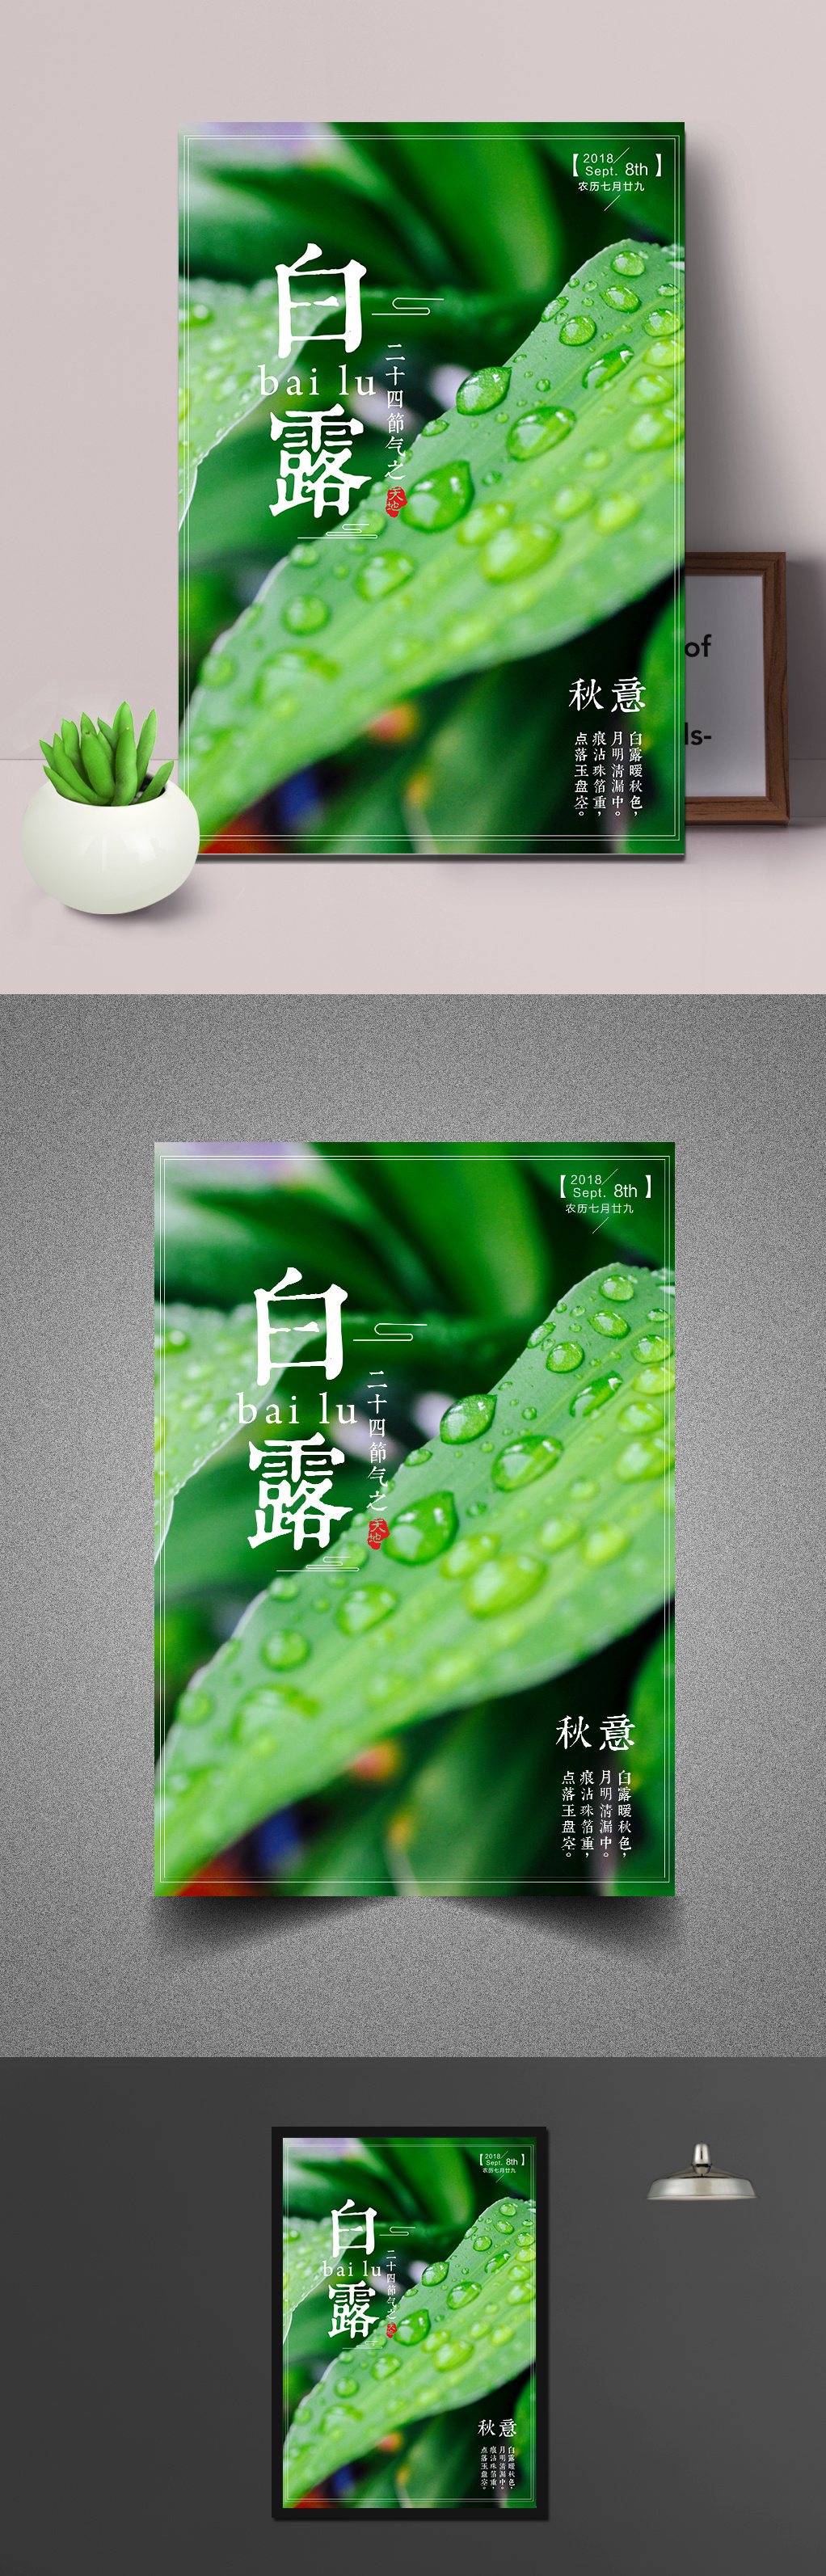 绿色植物水滴白露节气海报